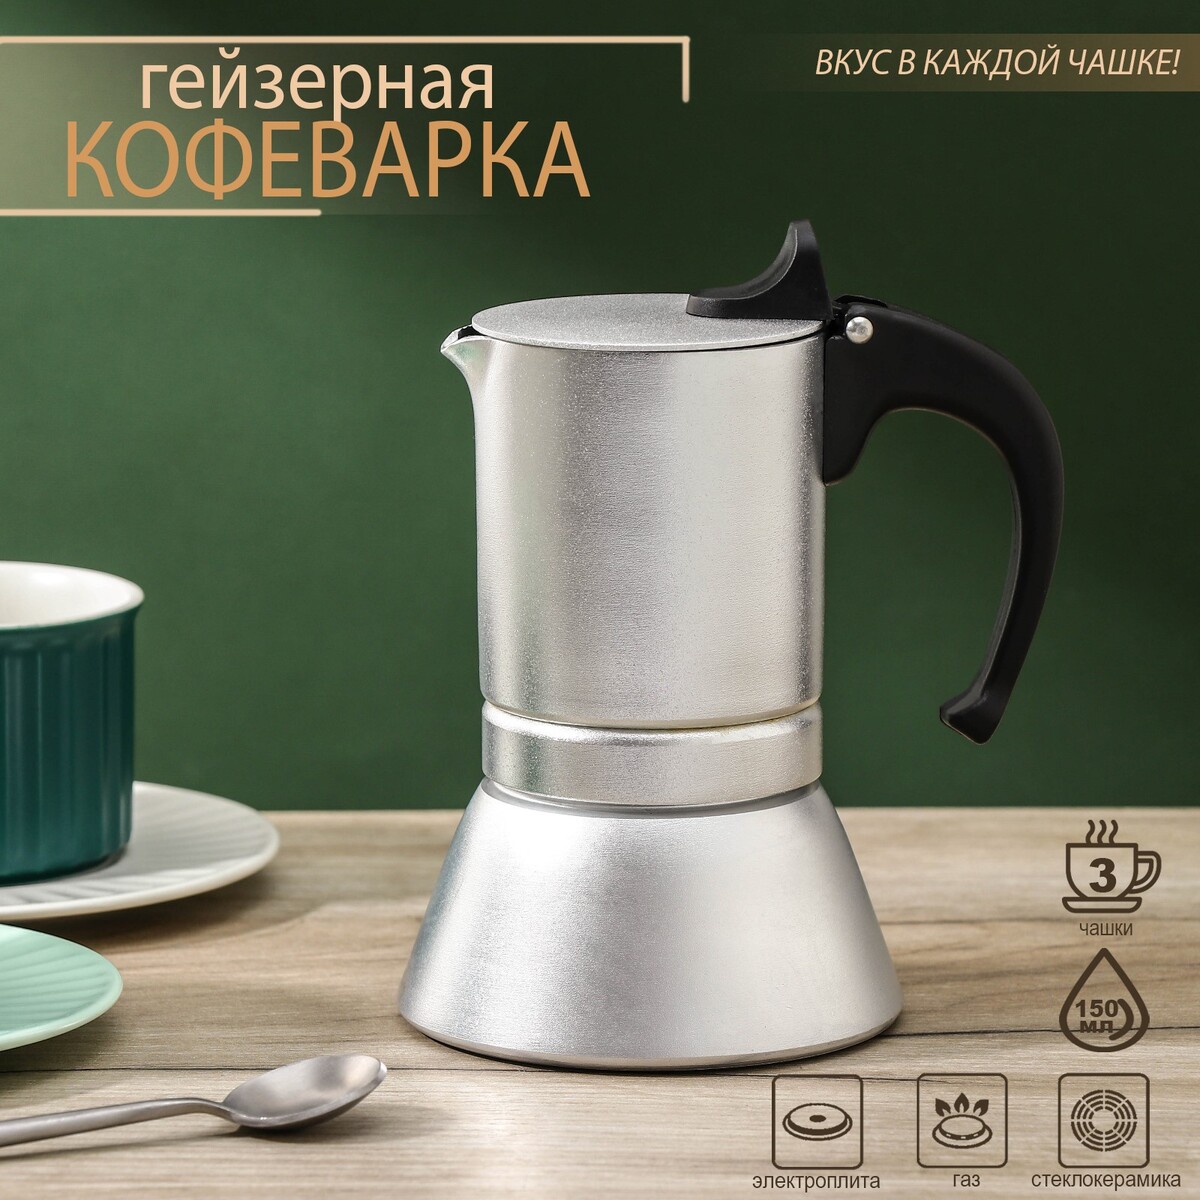 Кофеварка гейзерная magistro salem, на 3 чашки, 150 мл, индукция чашки для эспрессо delonghi dlsc310